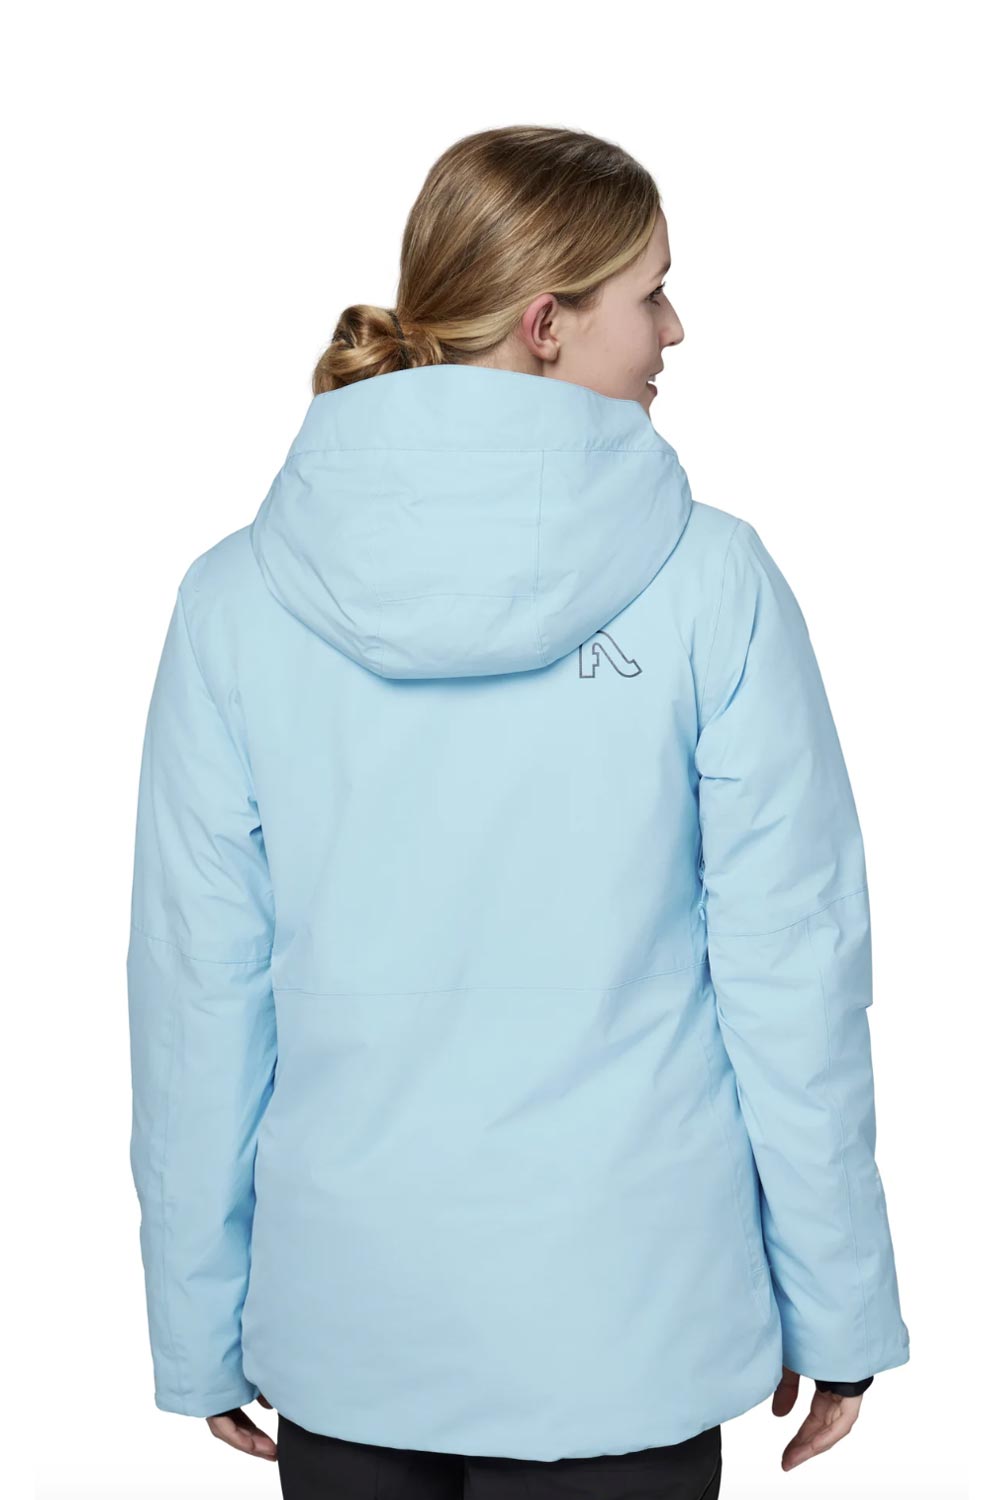 women's Flylow Avery jacket, light blue